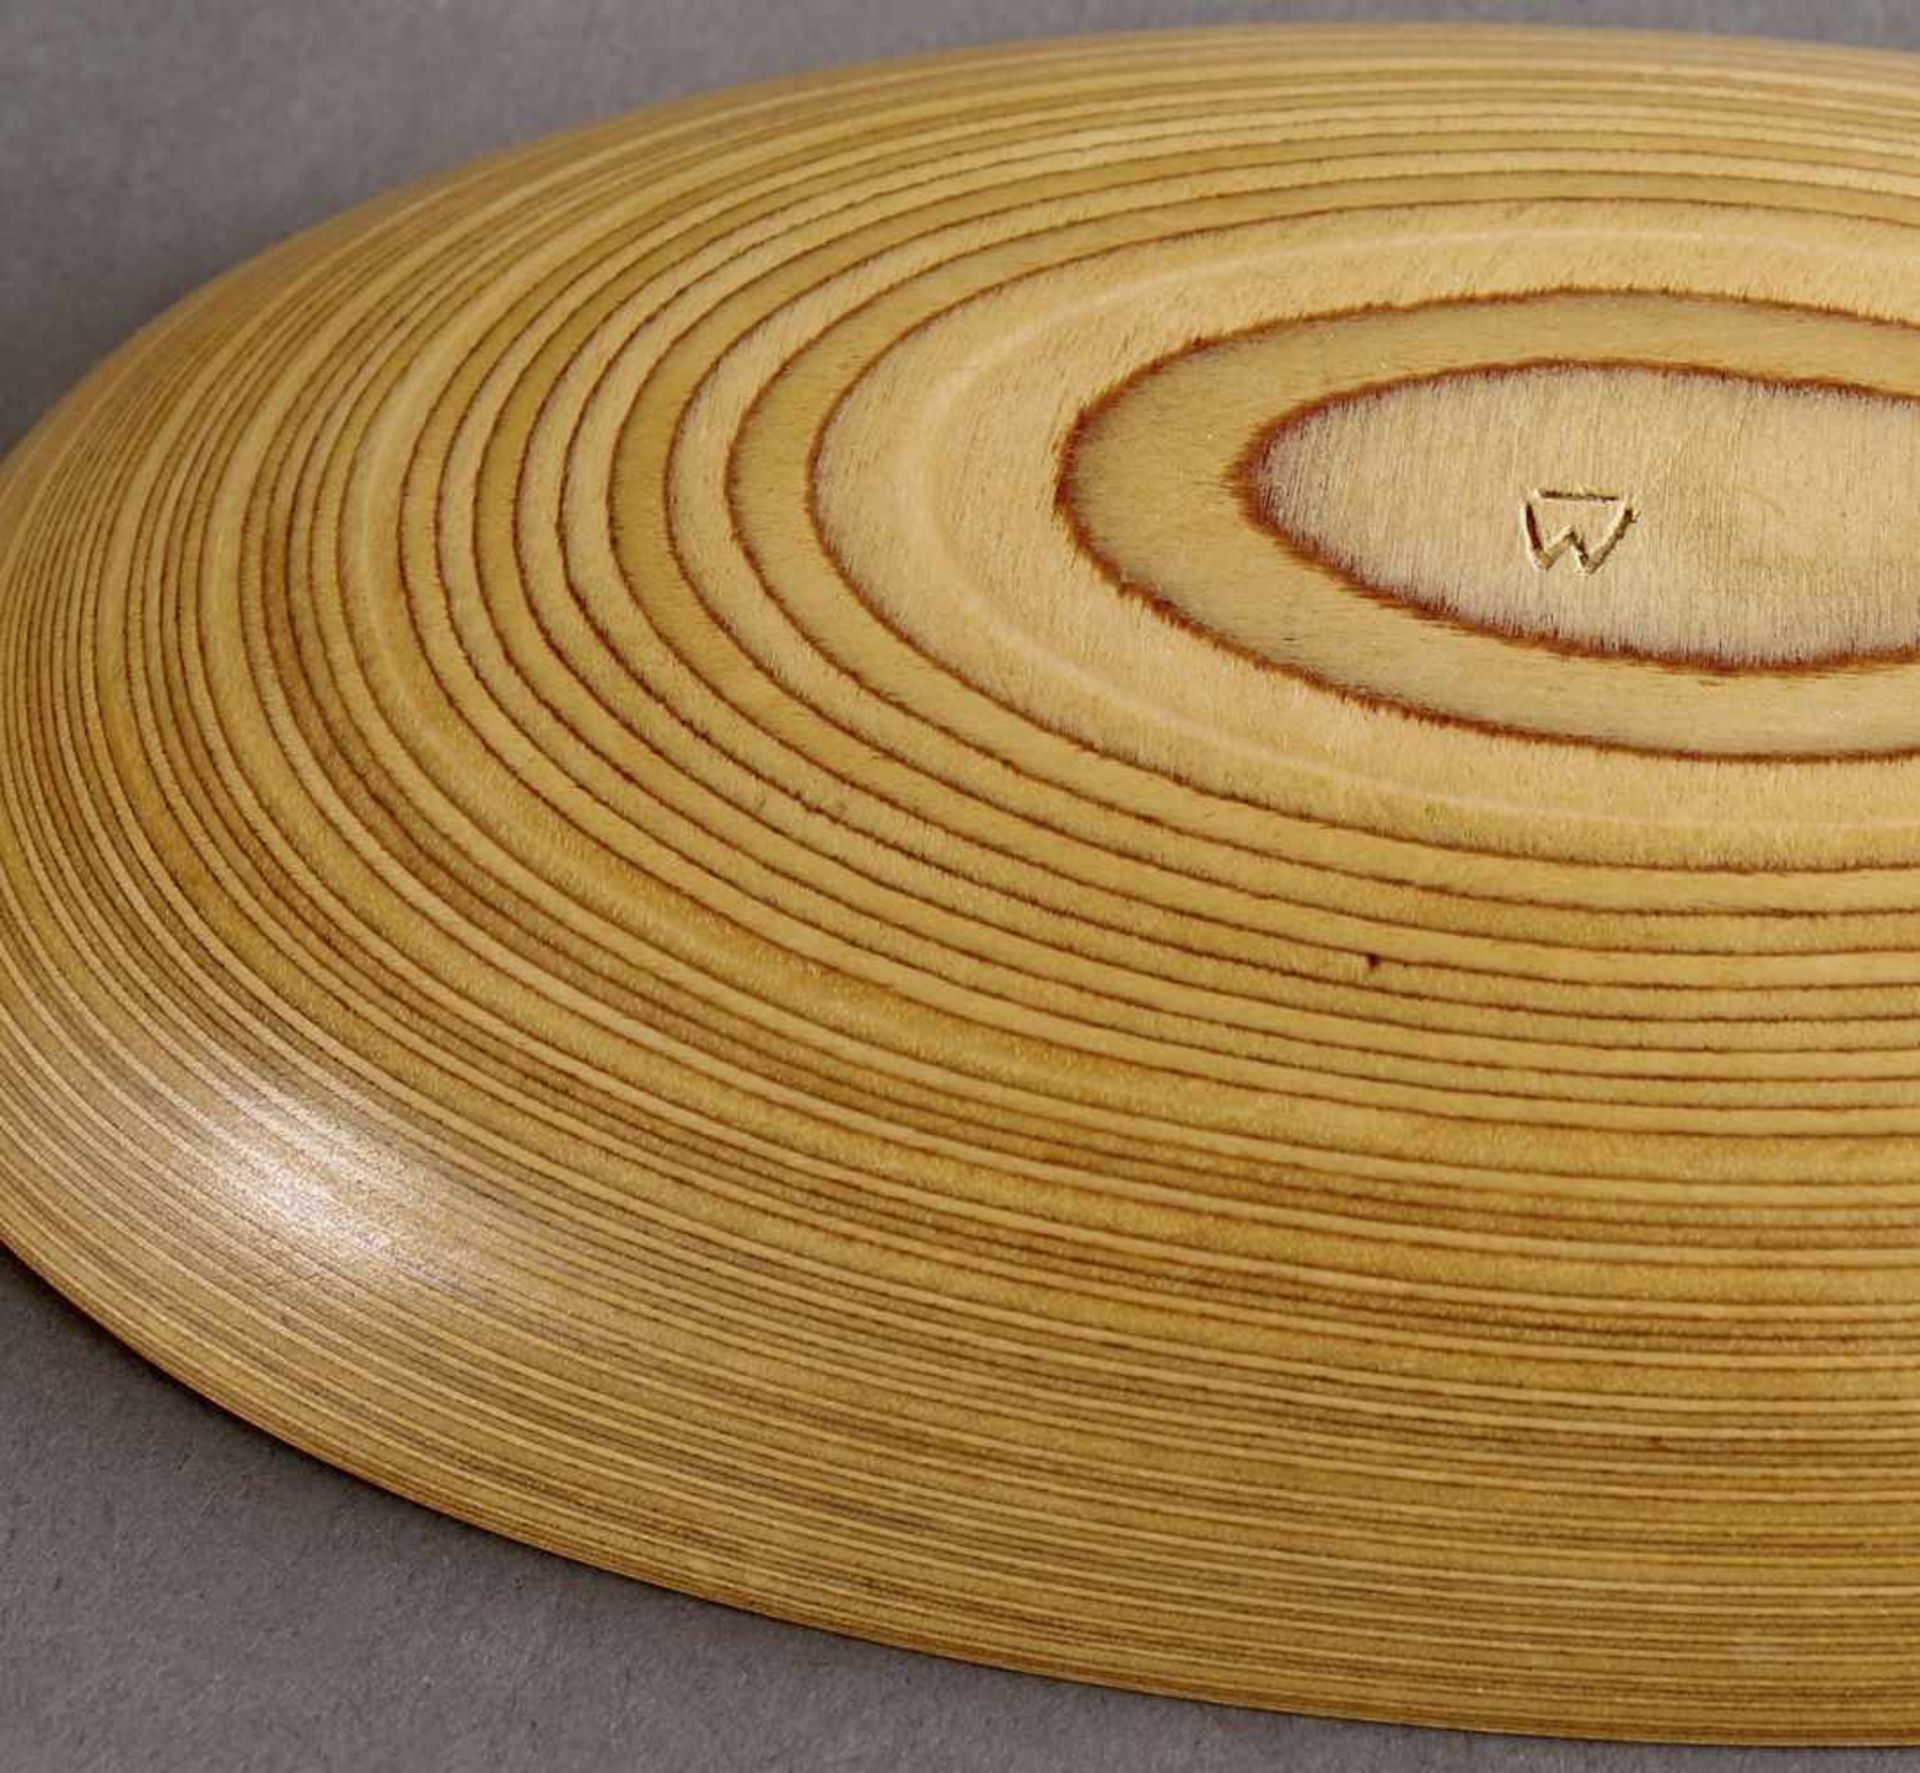 Tapio WirkkalaTapio Wirkkala wooden Clam / Shell BowlBowl. Designed in 1954. Birch plywood. 3.2 x - Bild 2 aus 3